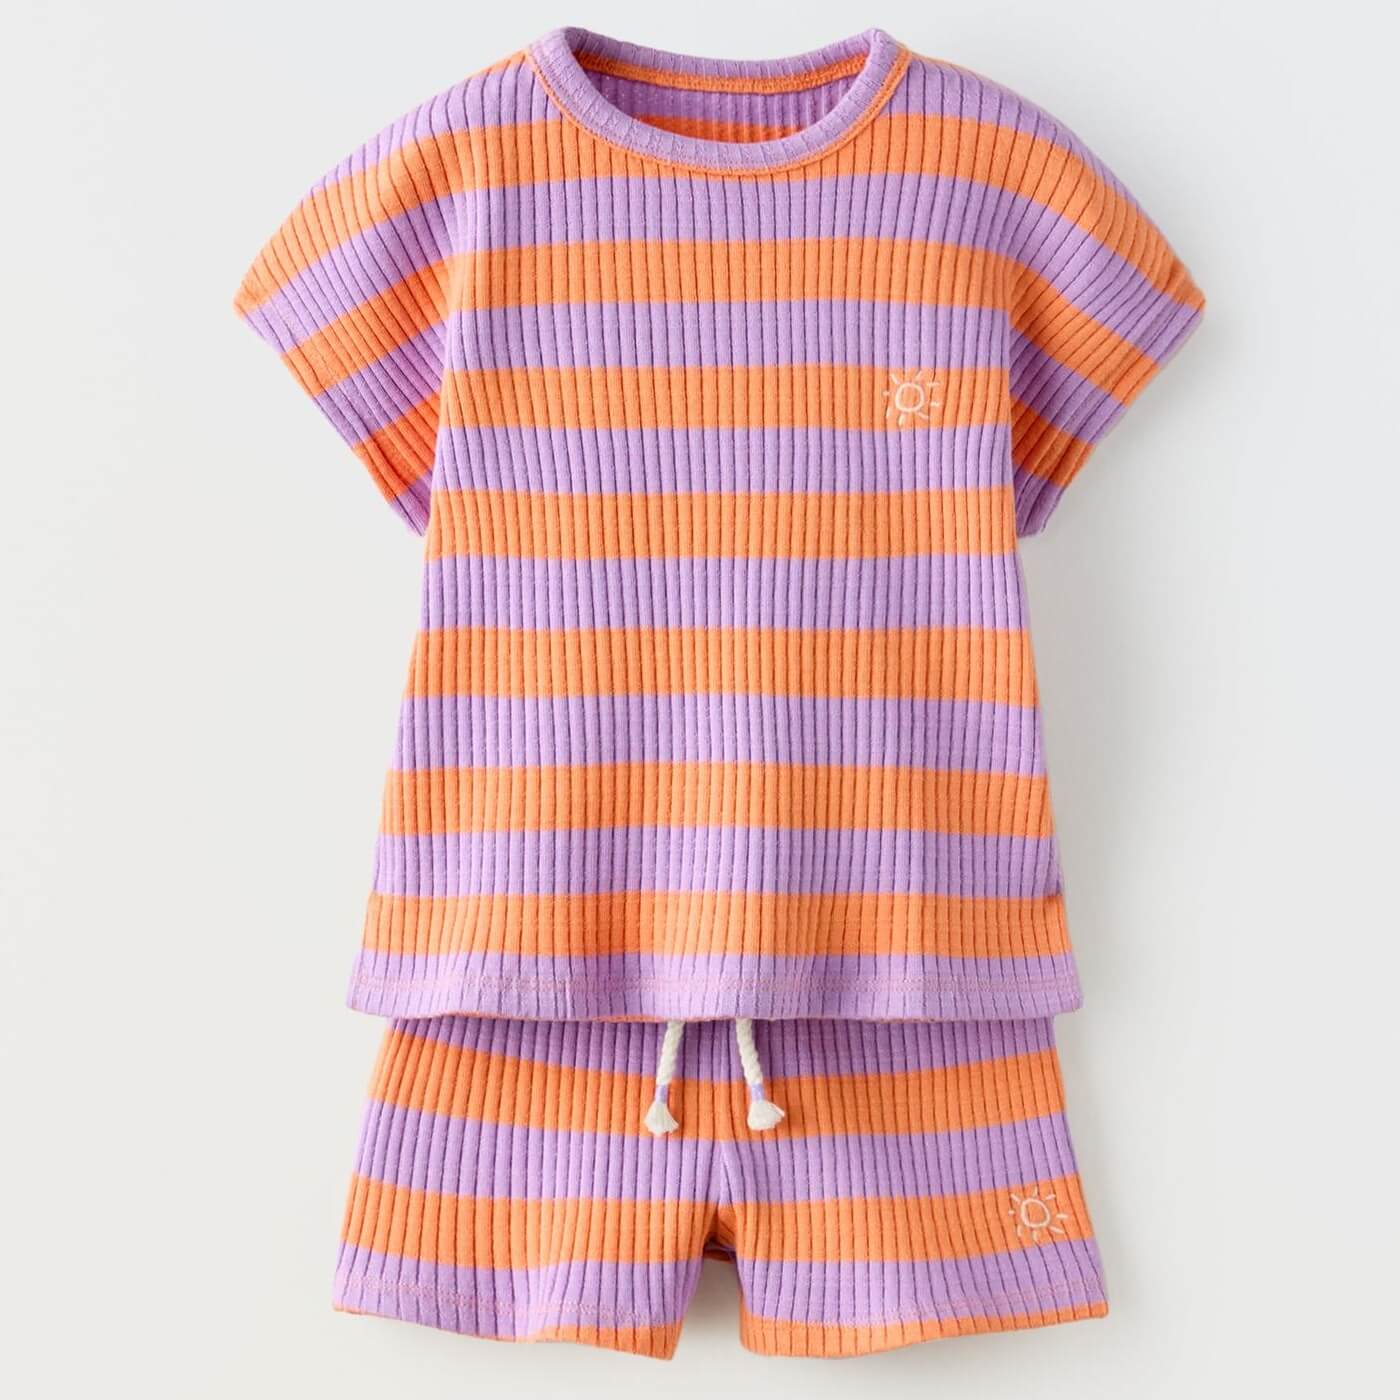 Комплект футболка + шорты Zara Striped Ribbed, оранжевый/сиреневый футболка zara contrast ribbed striped зеленый белый